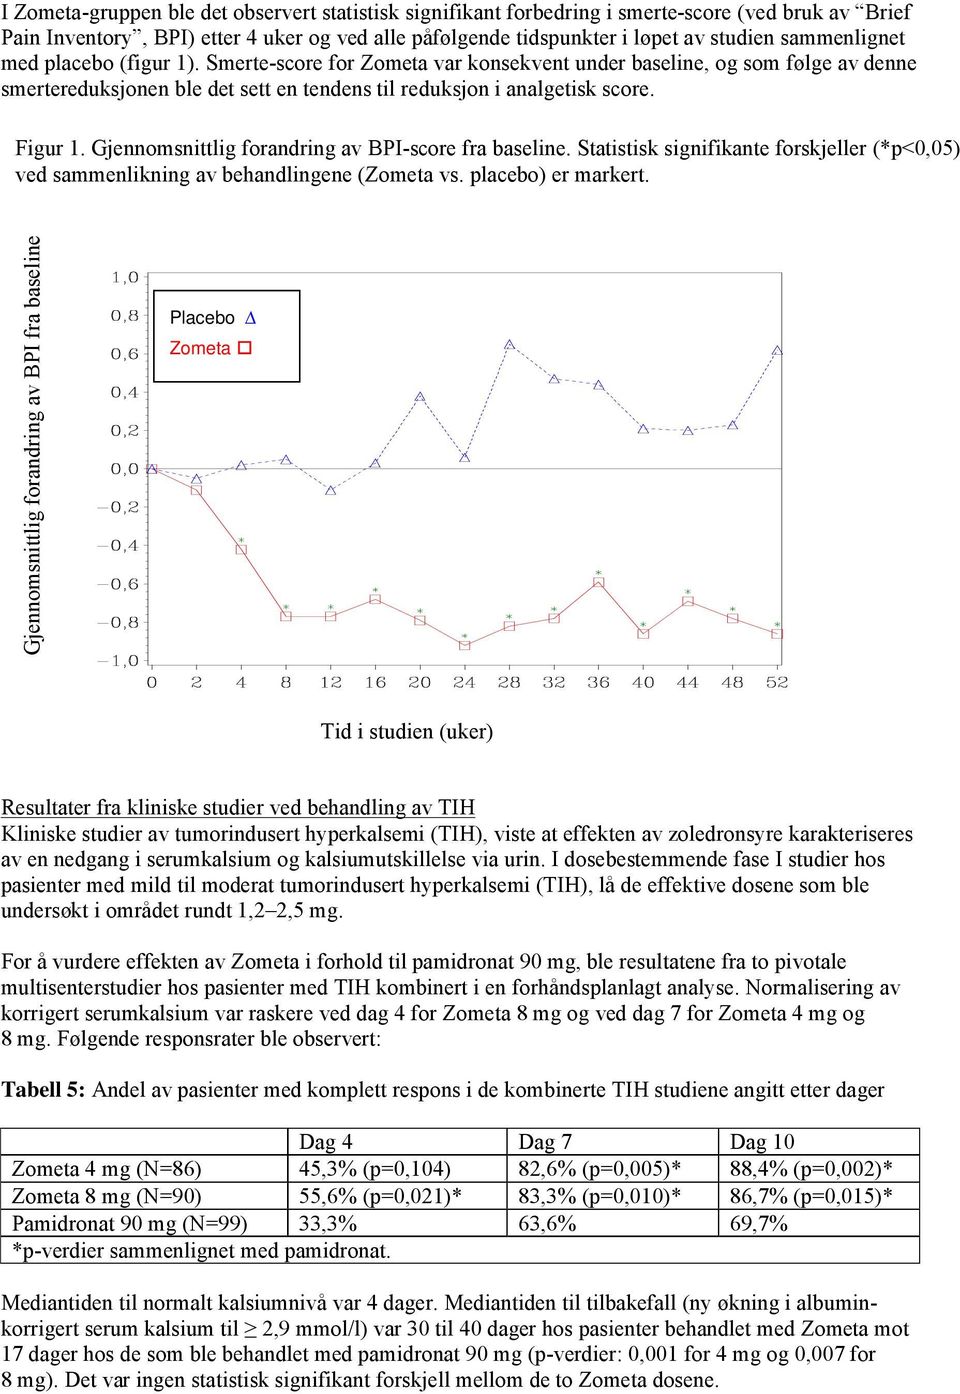 Gjennomsnittlig forandring av BPI-score fra baseline. Statistisk signifikante forskjeller (*p<0,05) ved sammenlikning av behandlingene (Zometa vs. placebo) er markert.